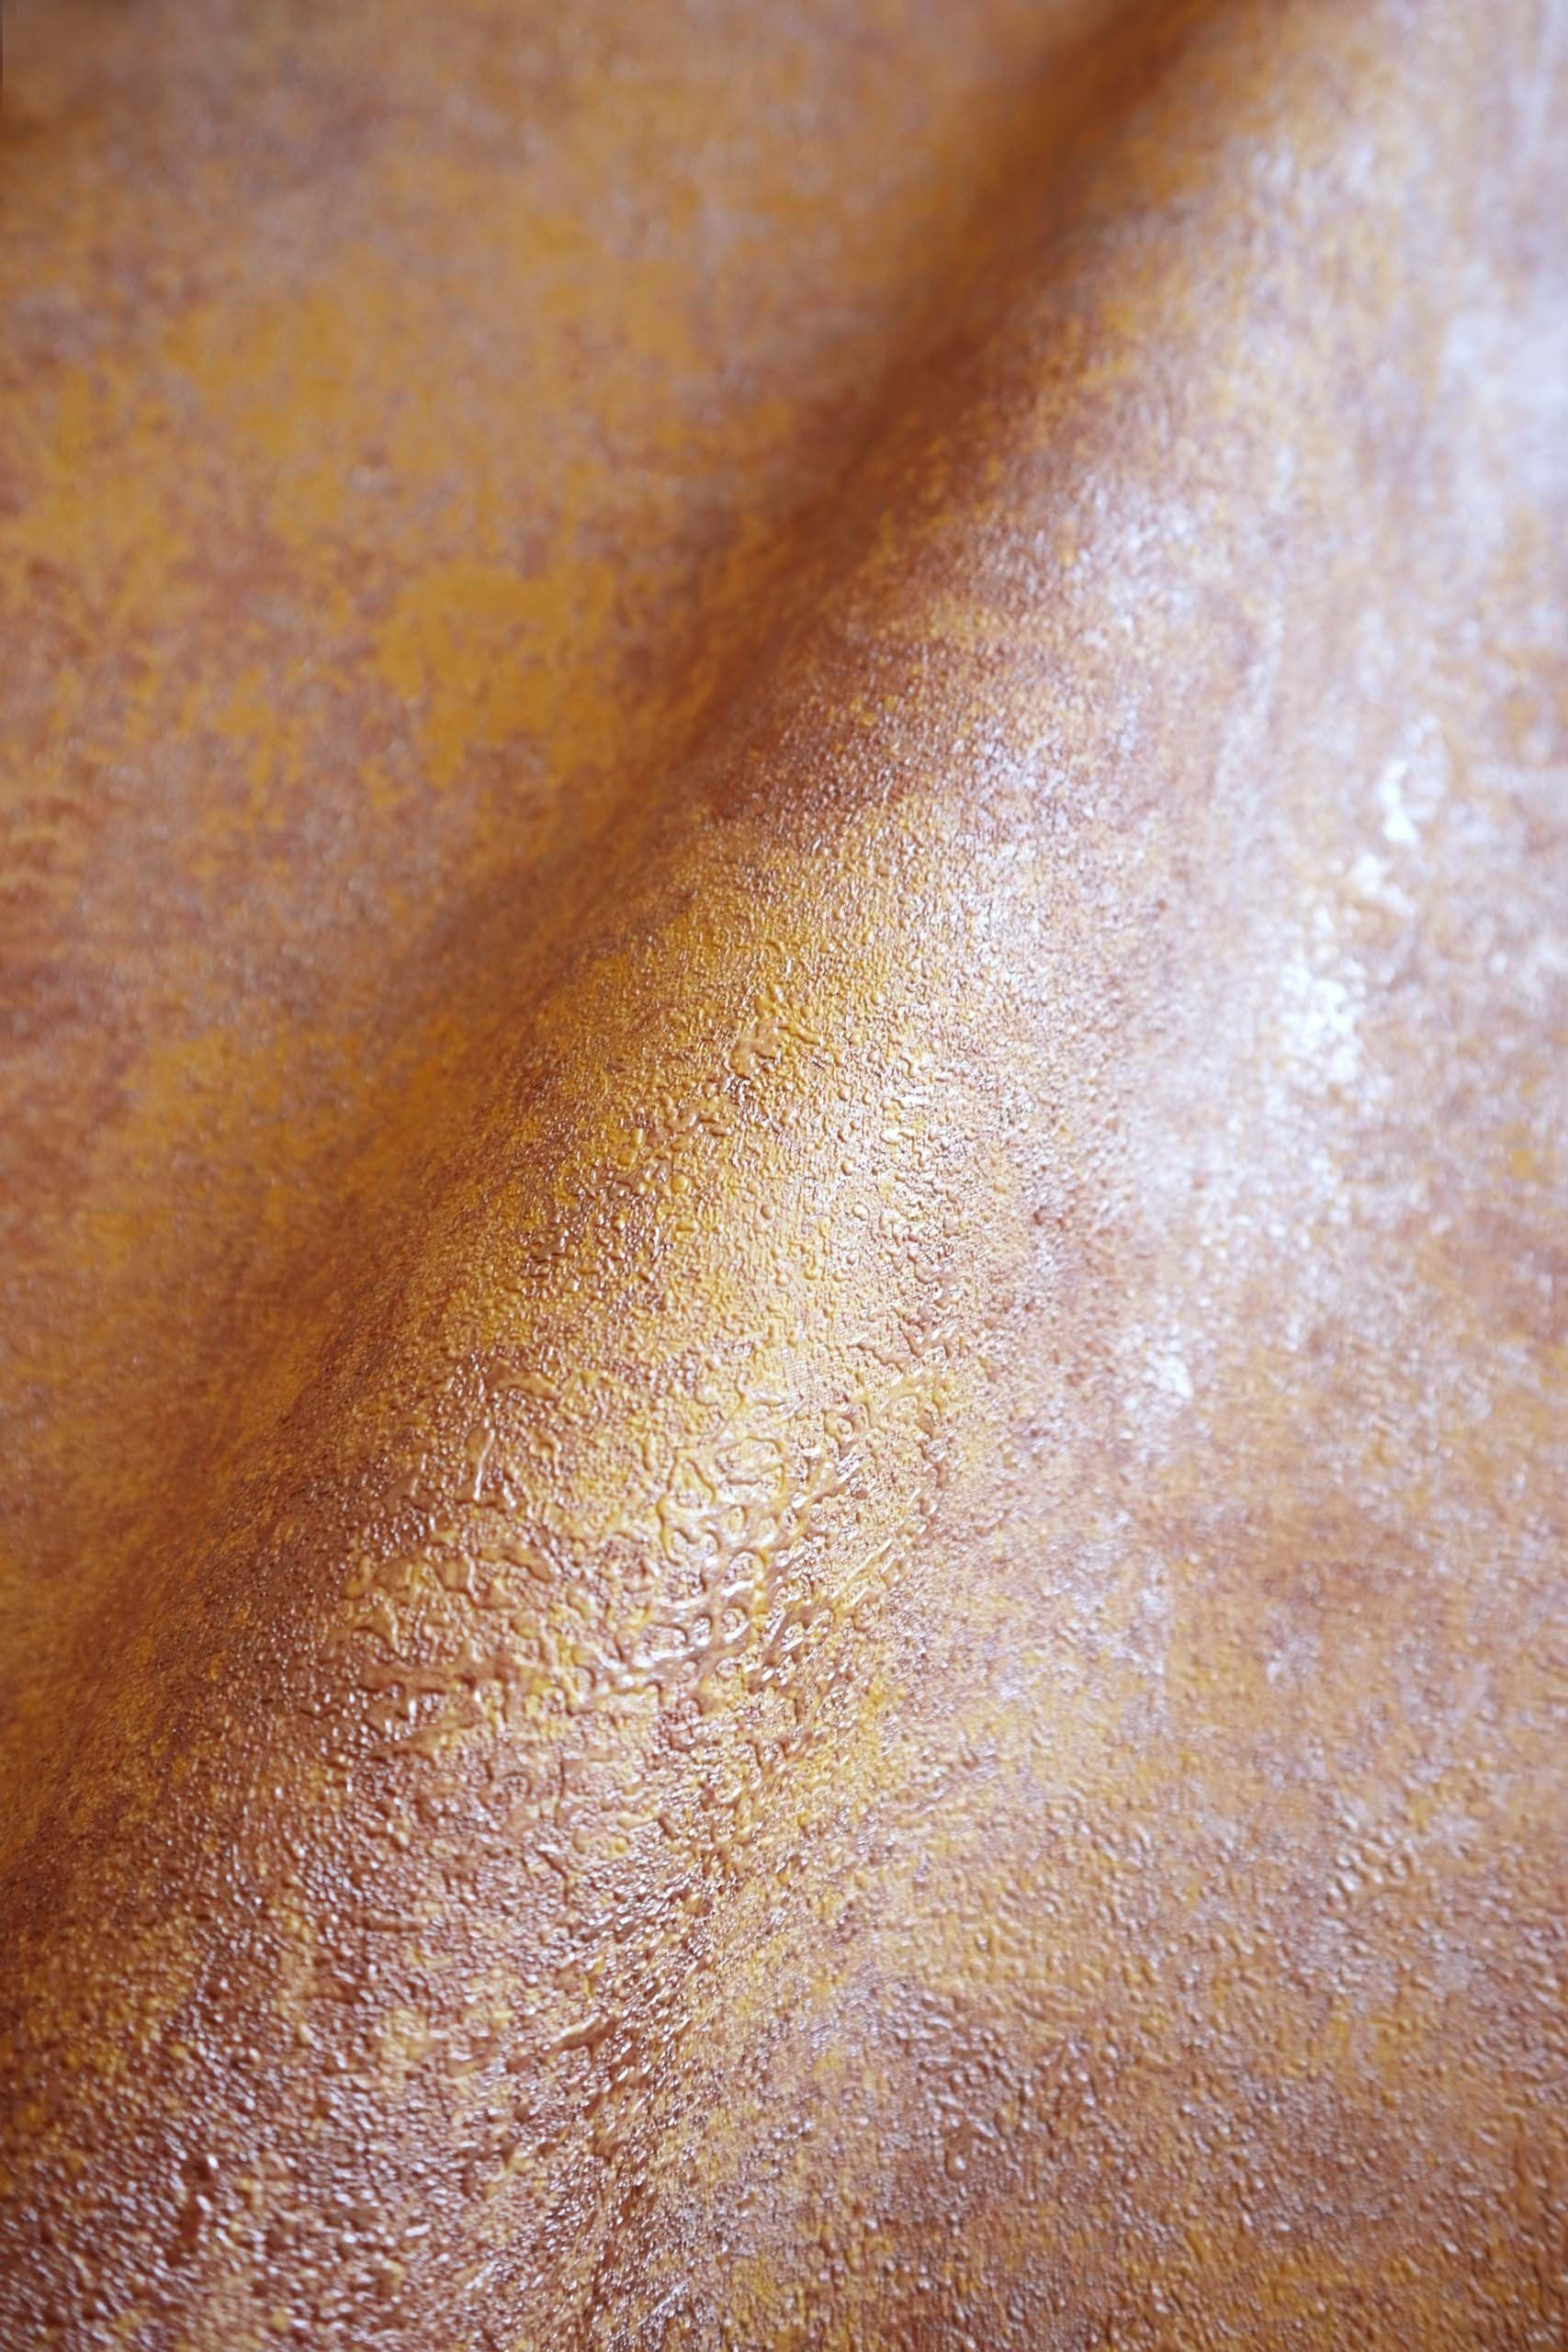 Newroom Vliestapete, Orange Tapete Leicht Glänzend Modern - Mustertapete Metalic Braun Bronze Hexagon Grafisch für Schlafzimmer Wohnzimmer Küche